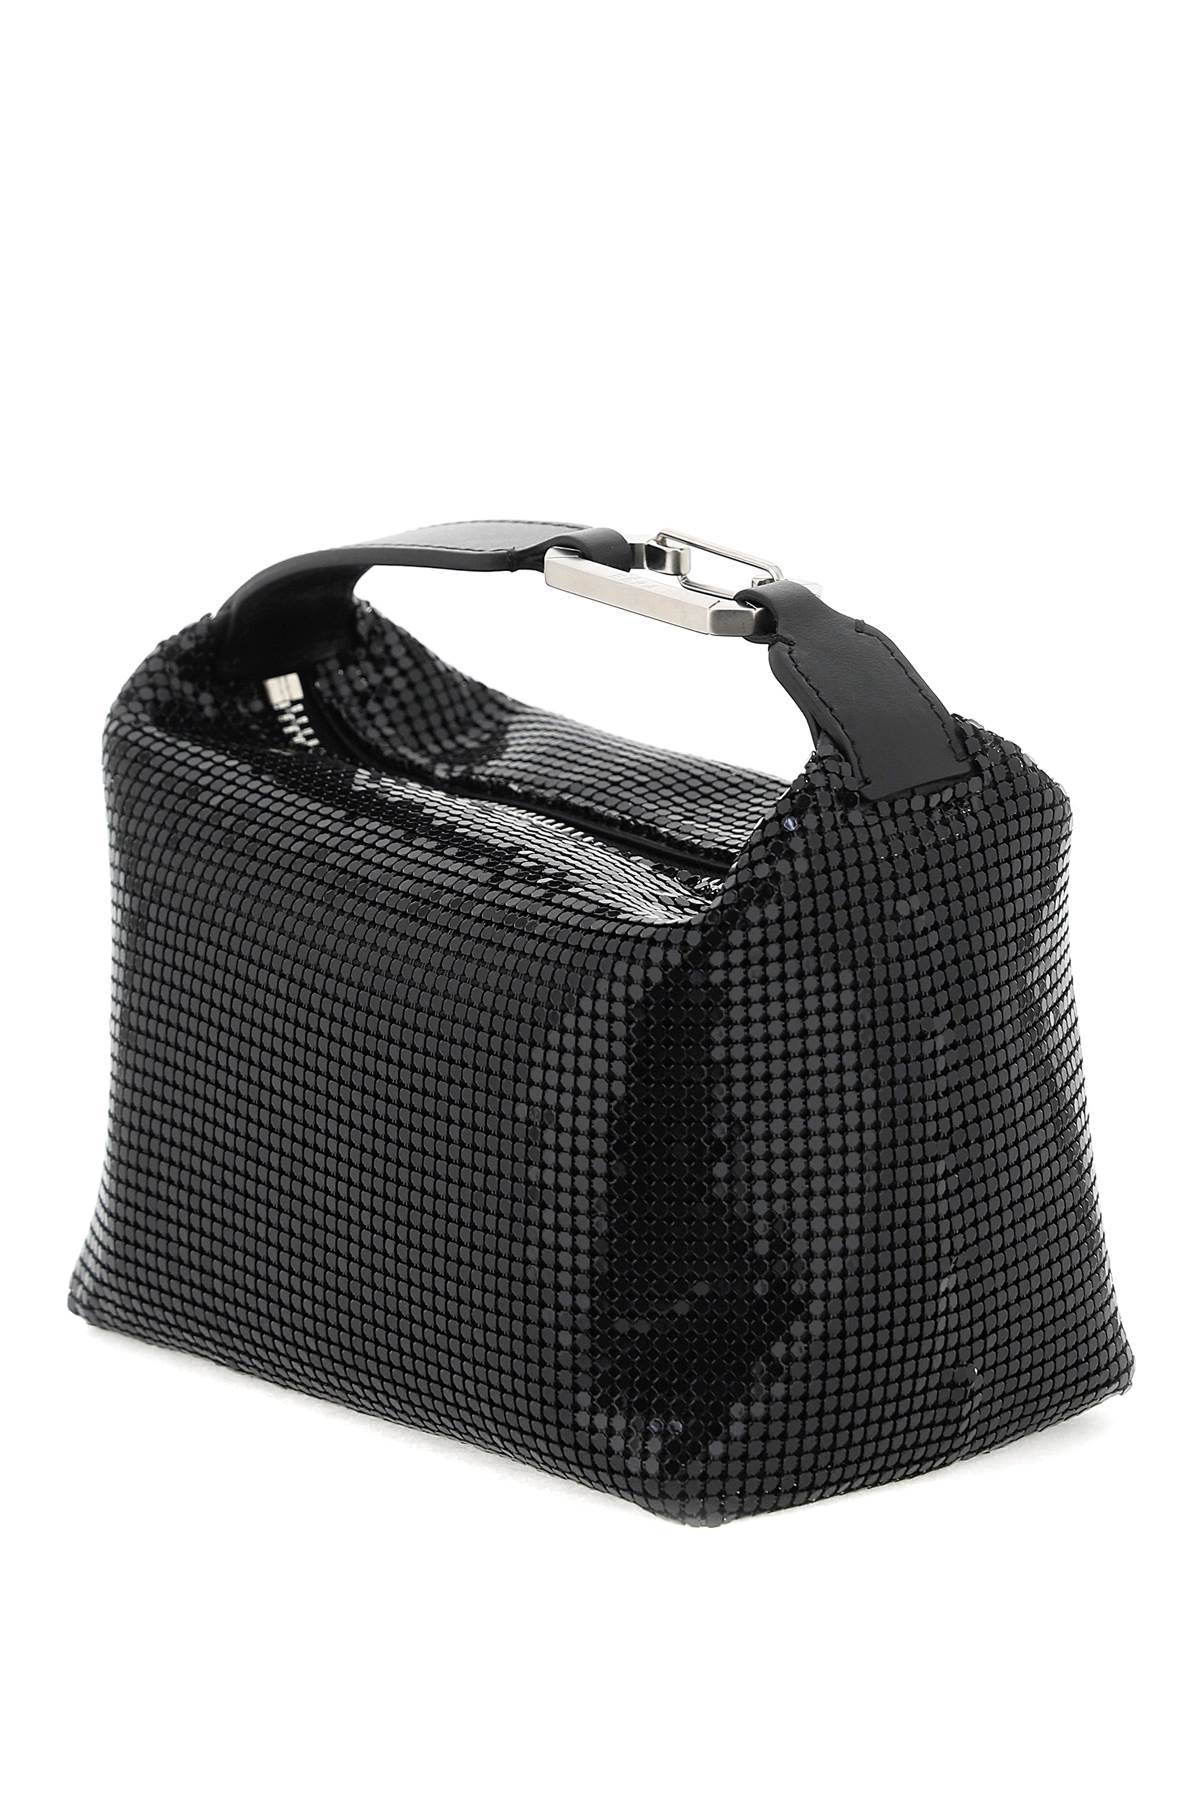 Shop Eéra 'moonbag' Handbag In Black